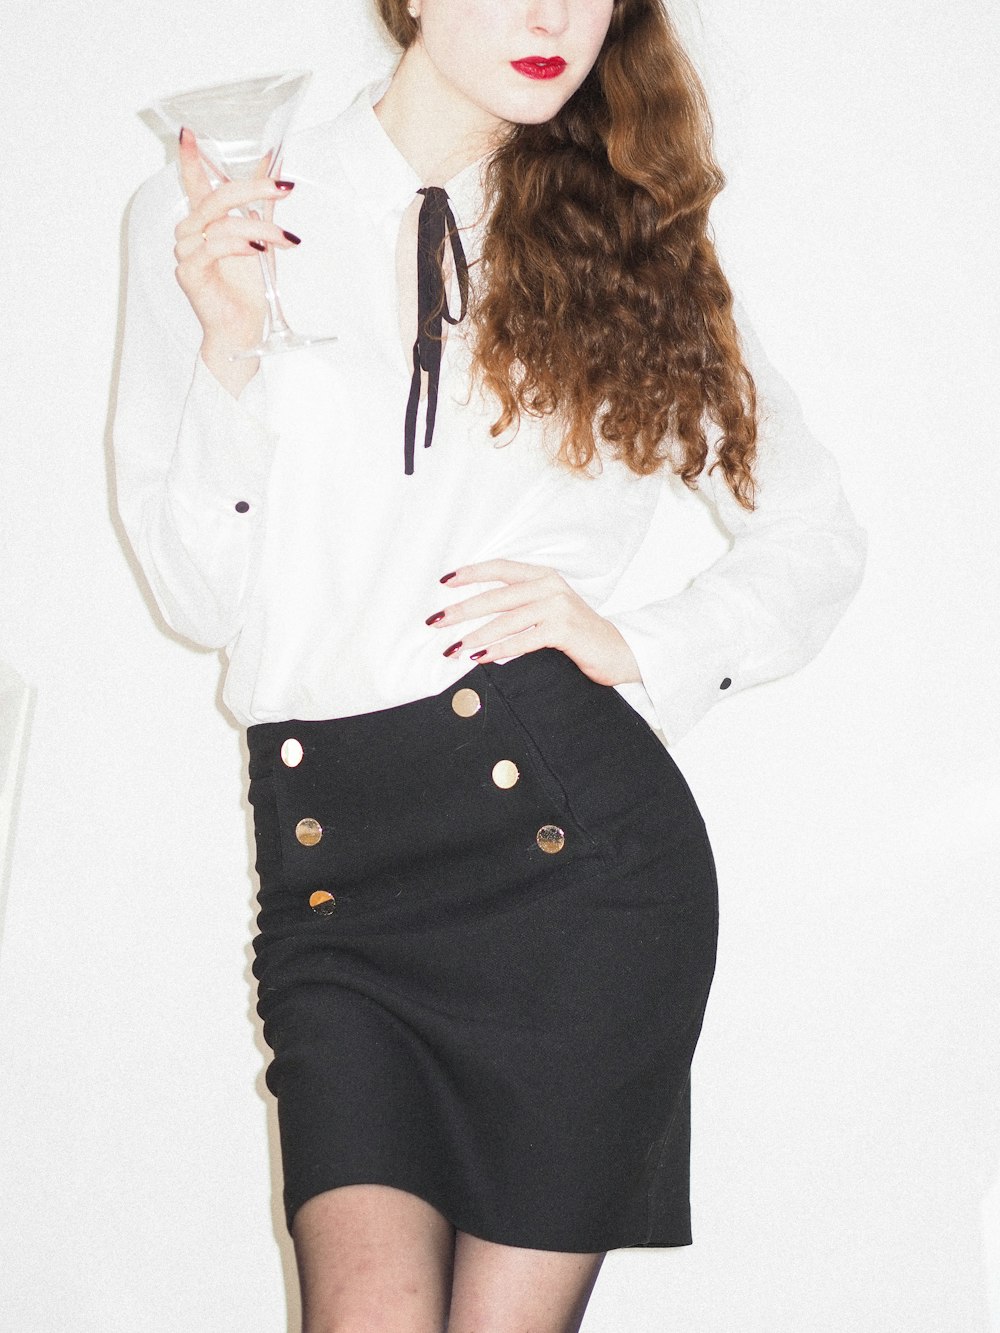 Foto mujer con camisa blanca de manga larga y falda negra – Imagen  Hollywood gratis en Unsplash